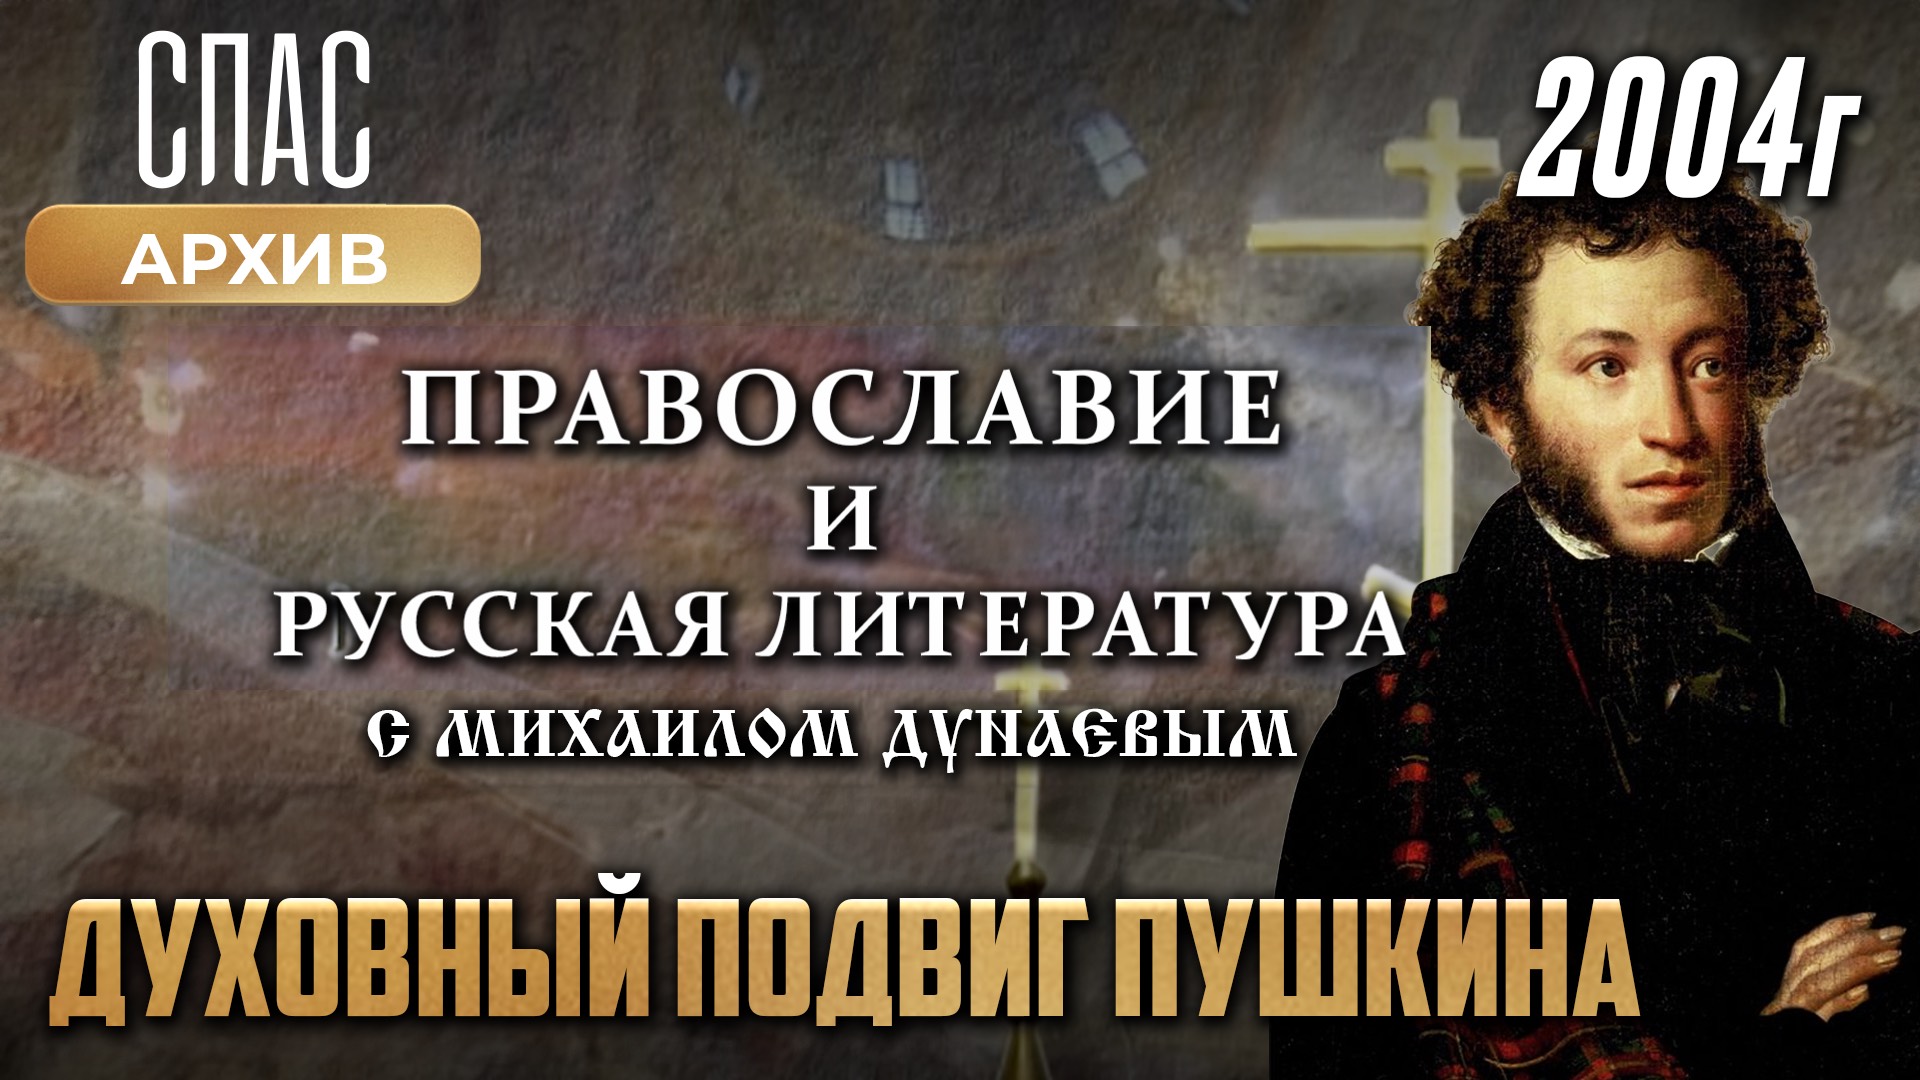 Духовный подвиг Пушкина. Православие и русская литература с Михаилом Дунаевым (2004)